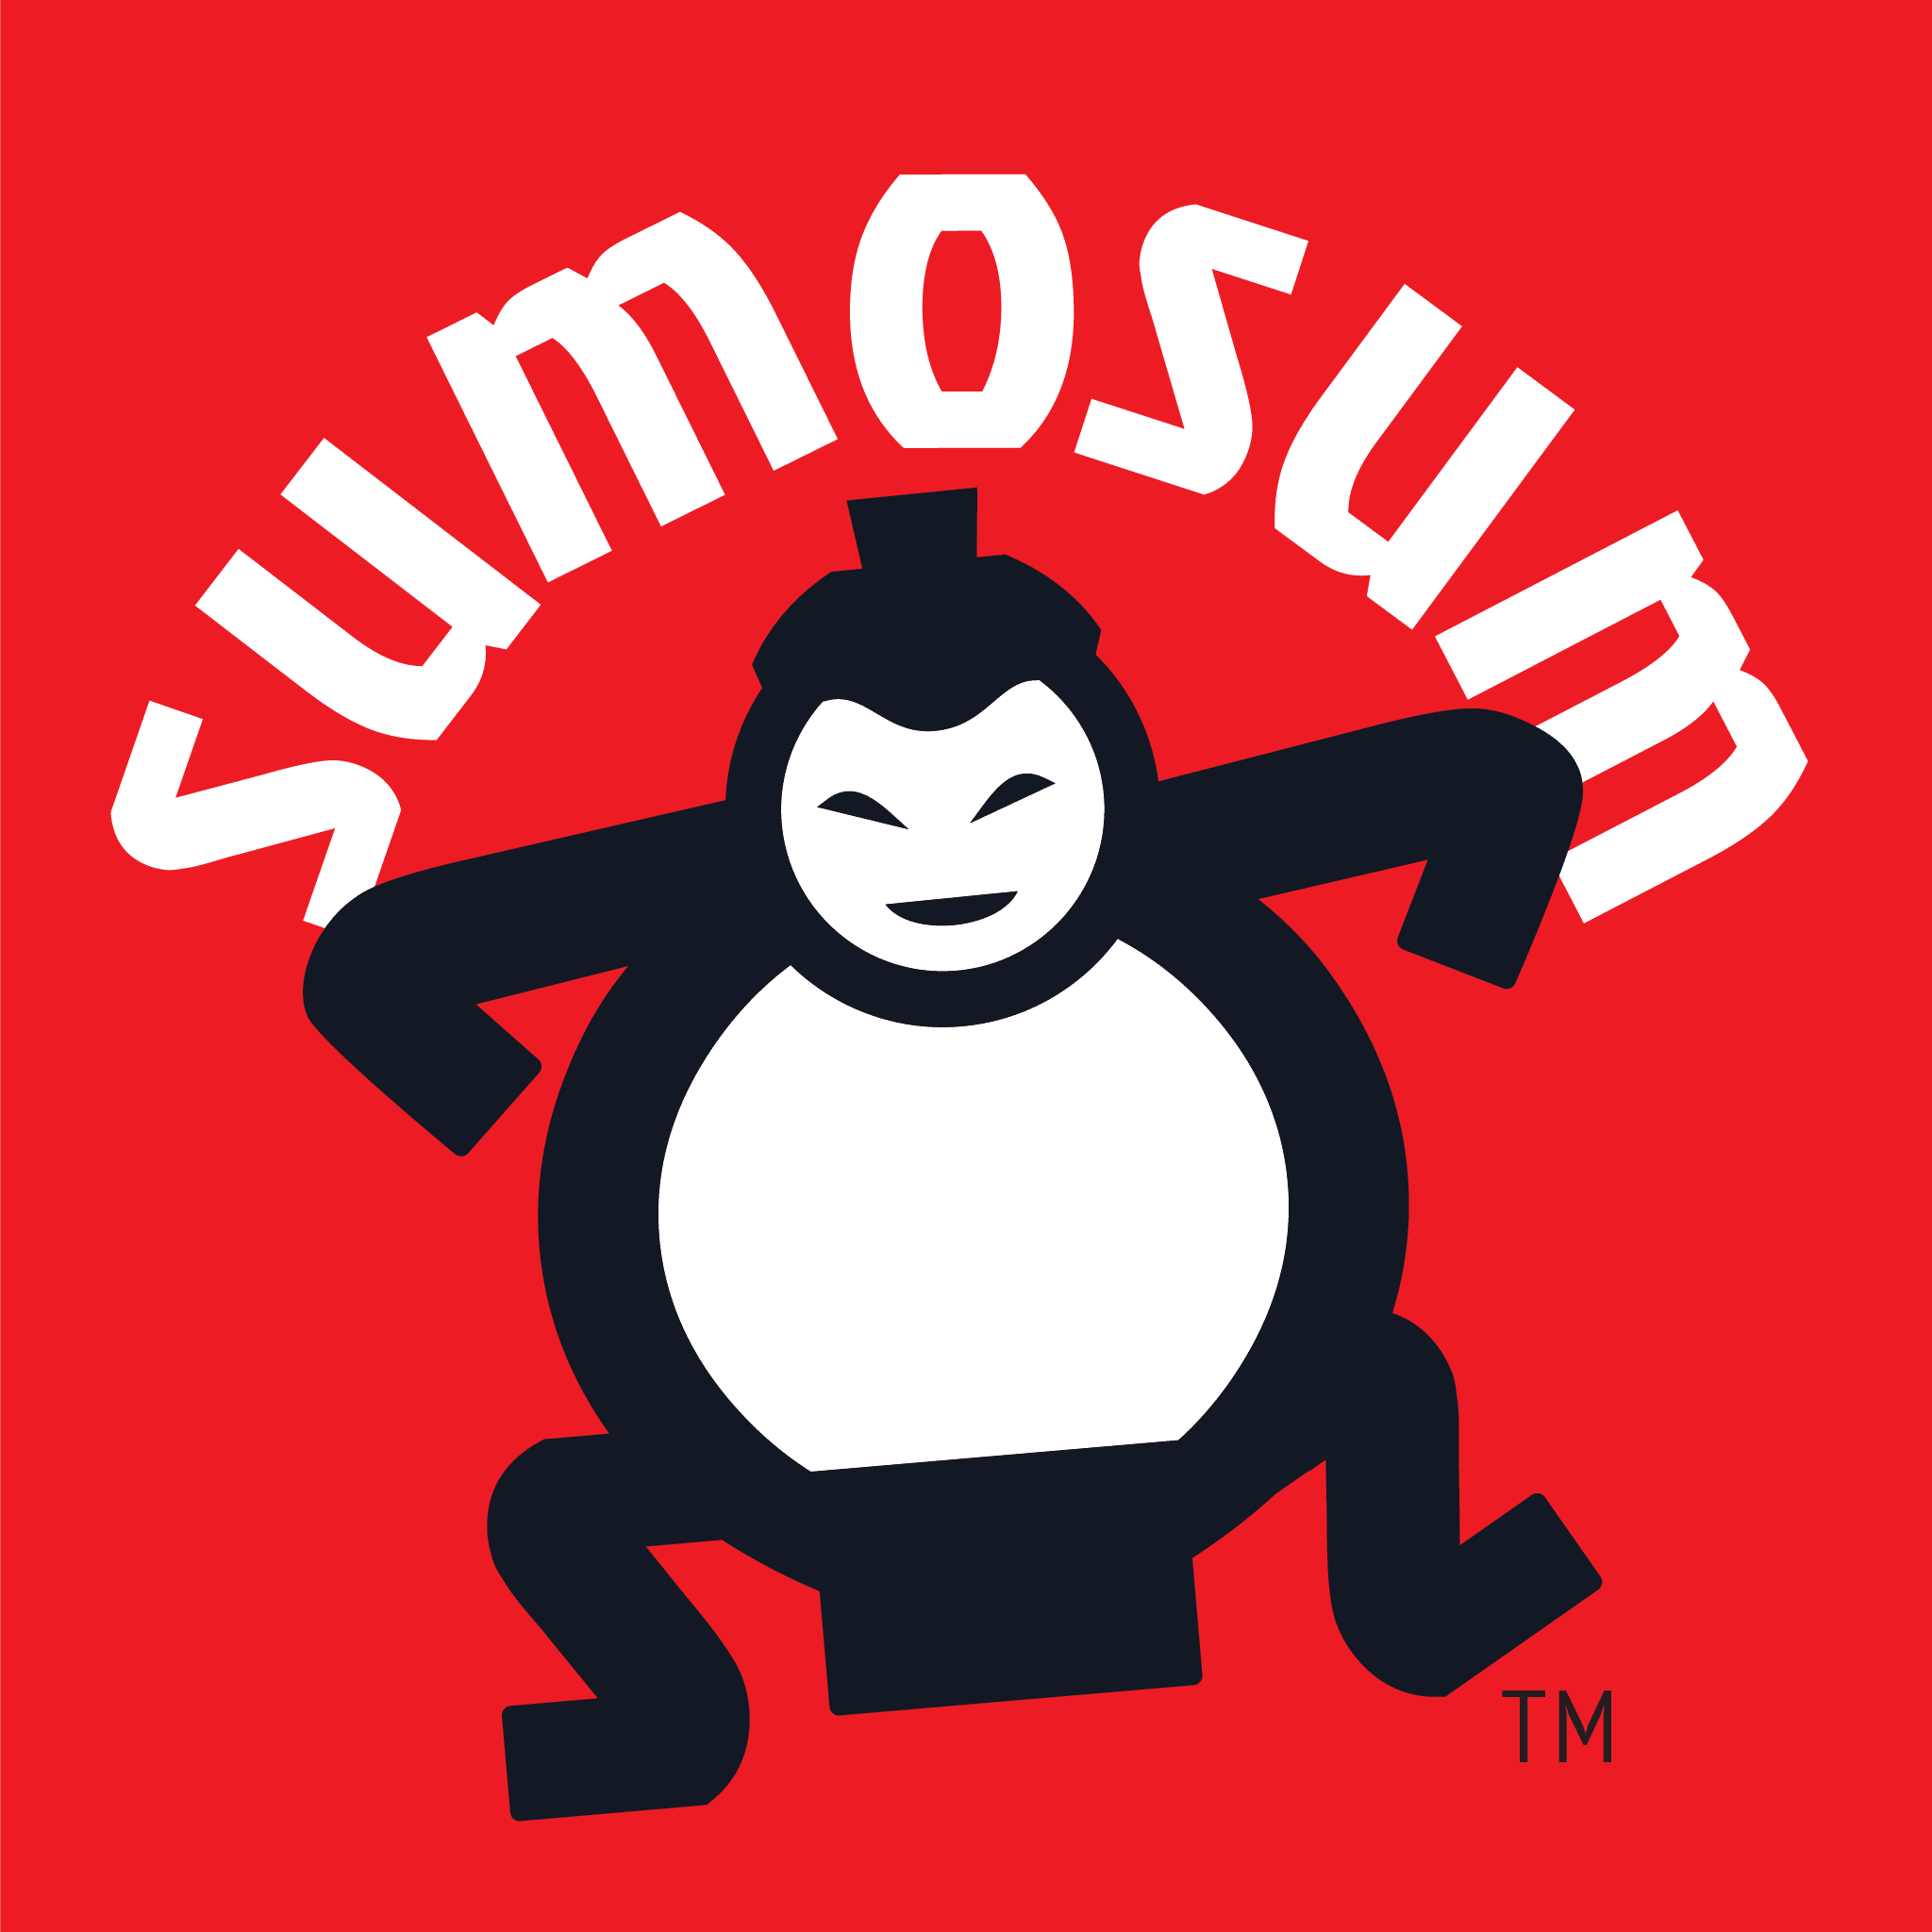 SumoSum logo